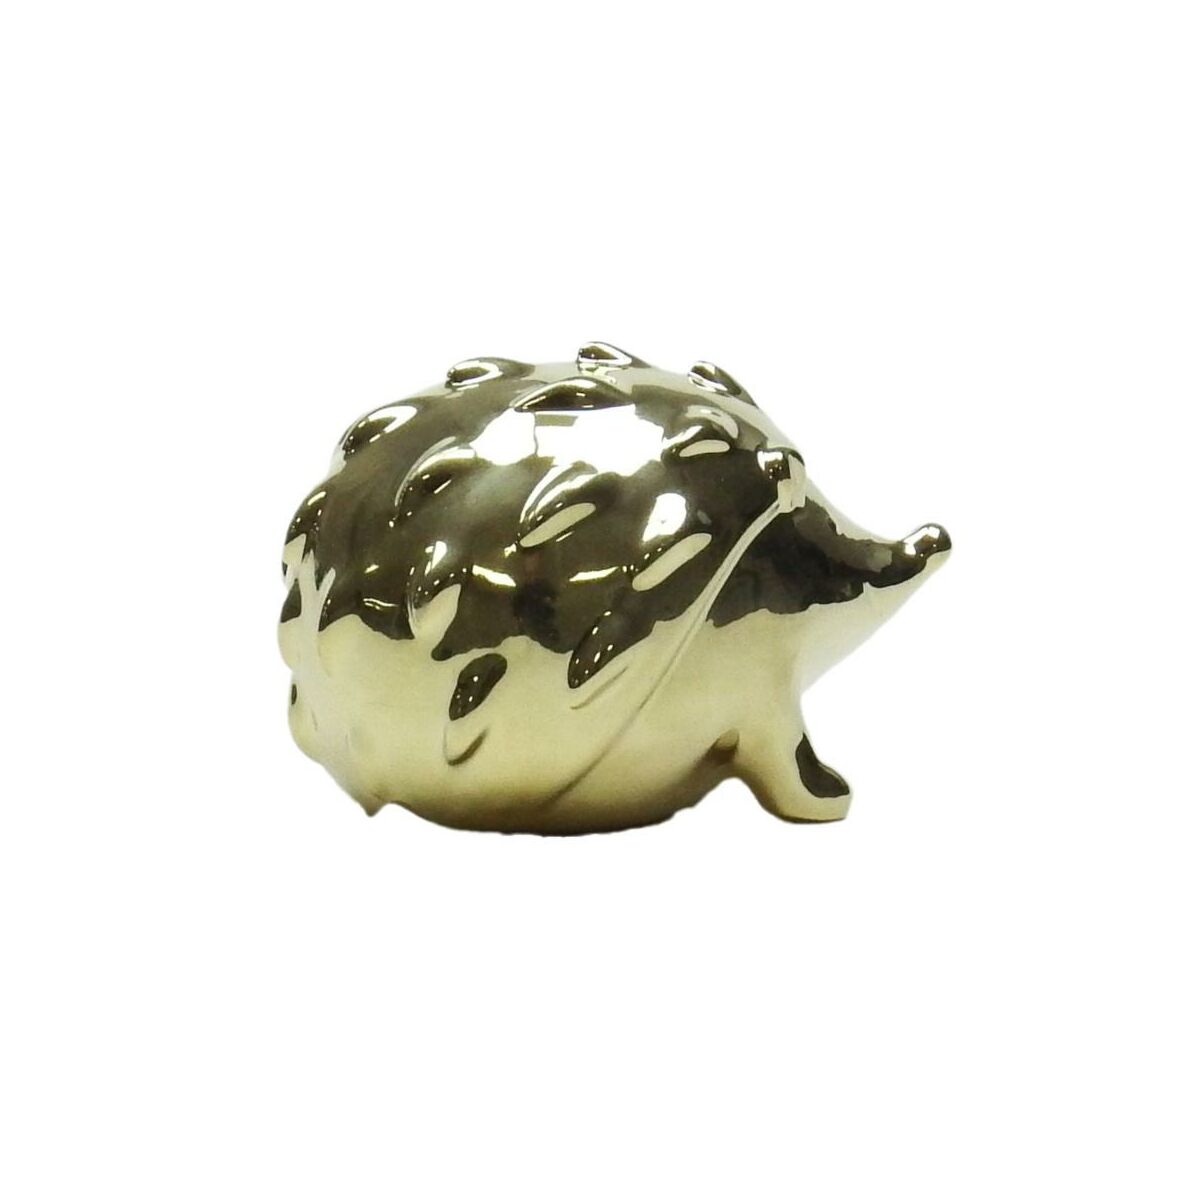 Figurka ceramiczna jeż złoty wys. 8 cm